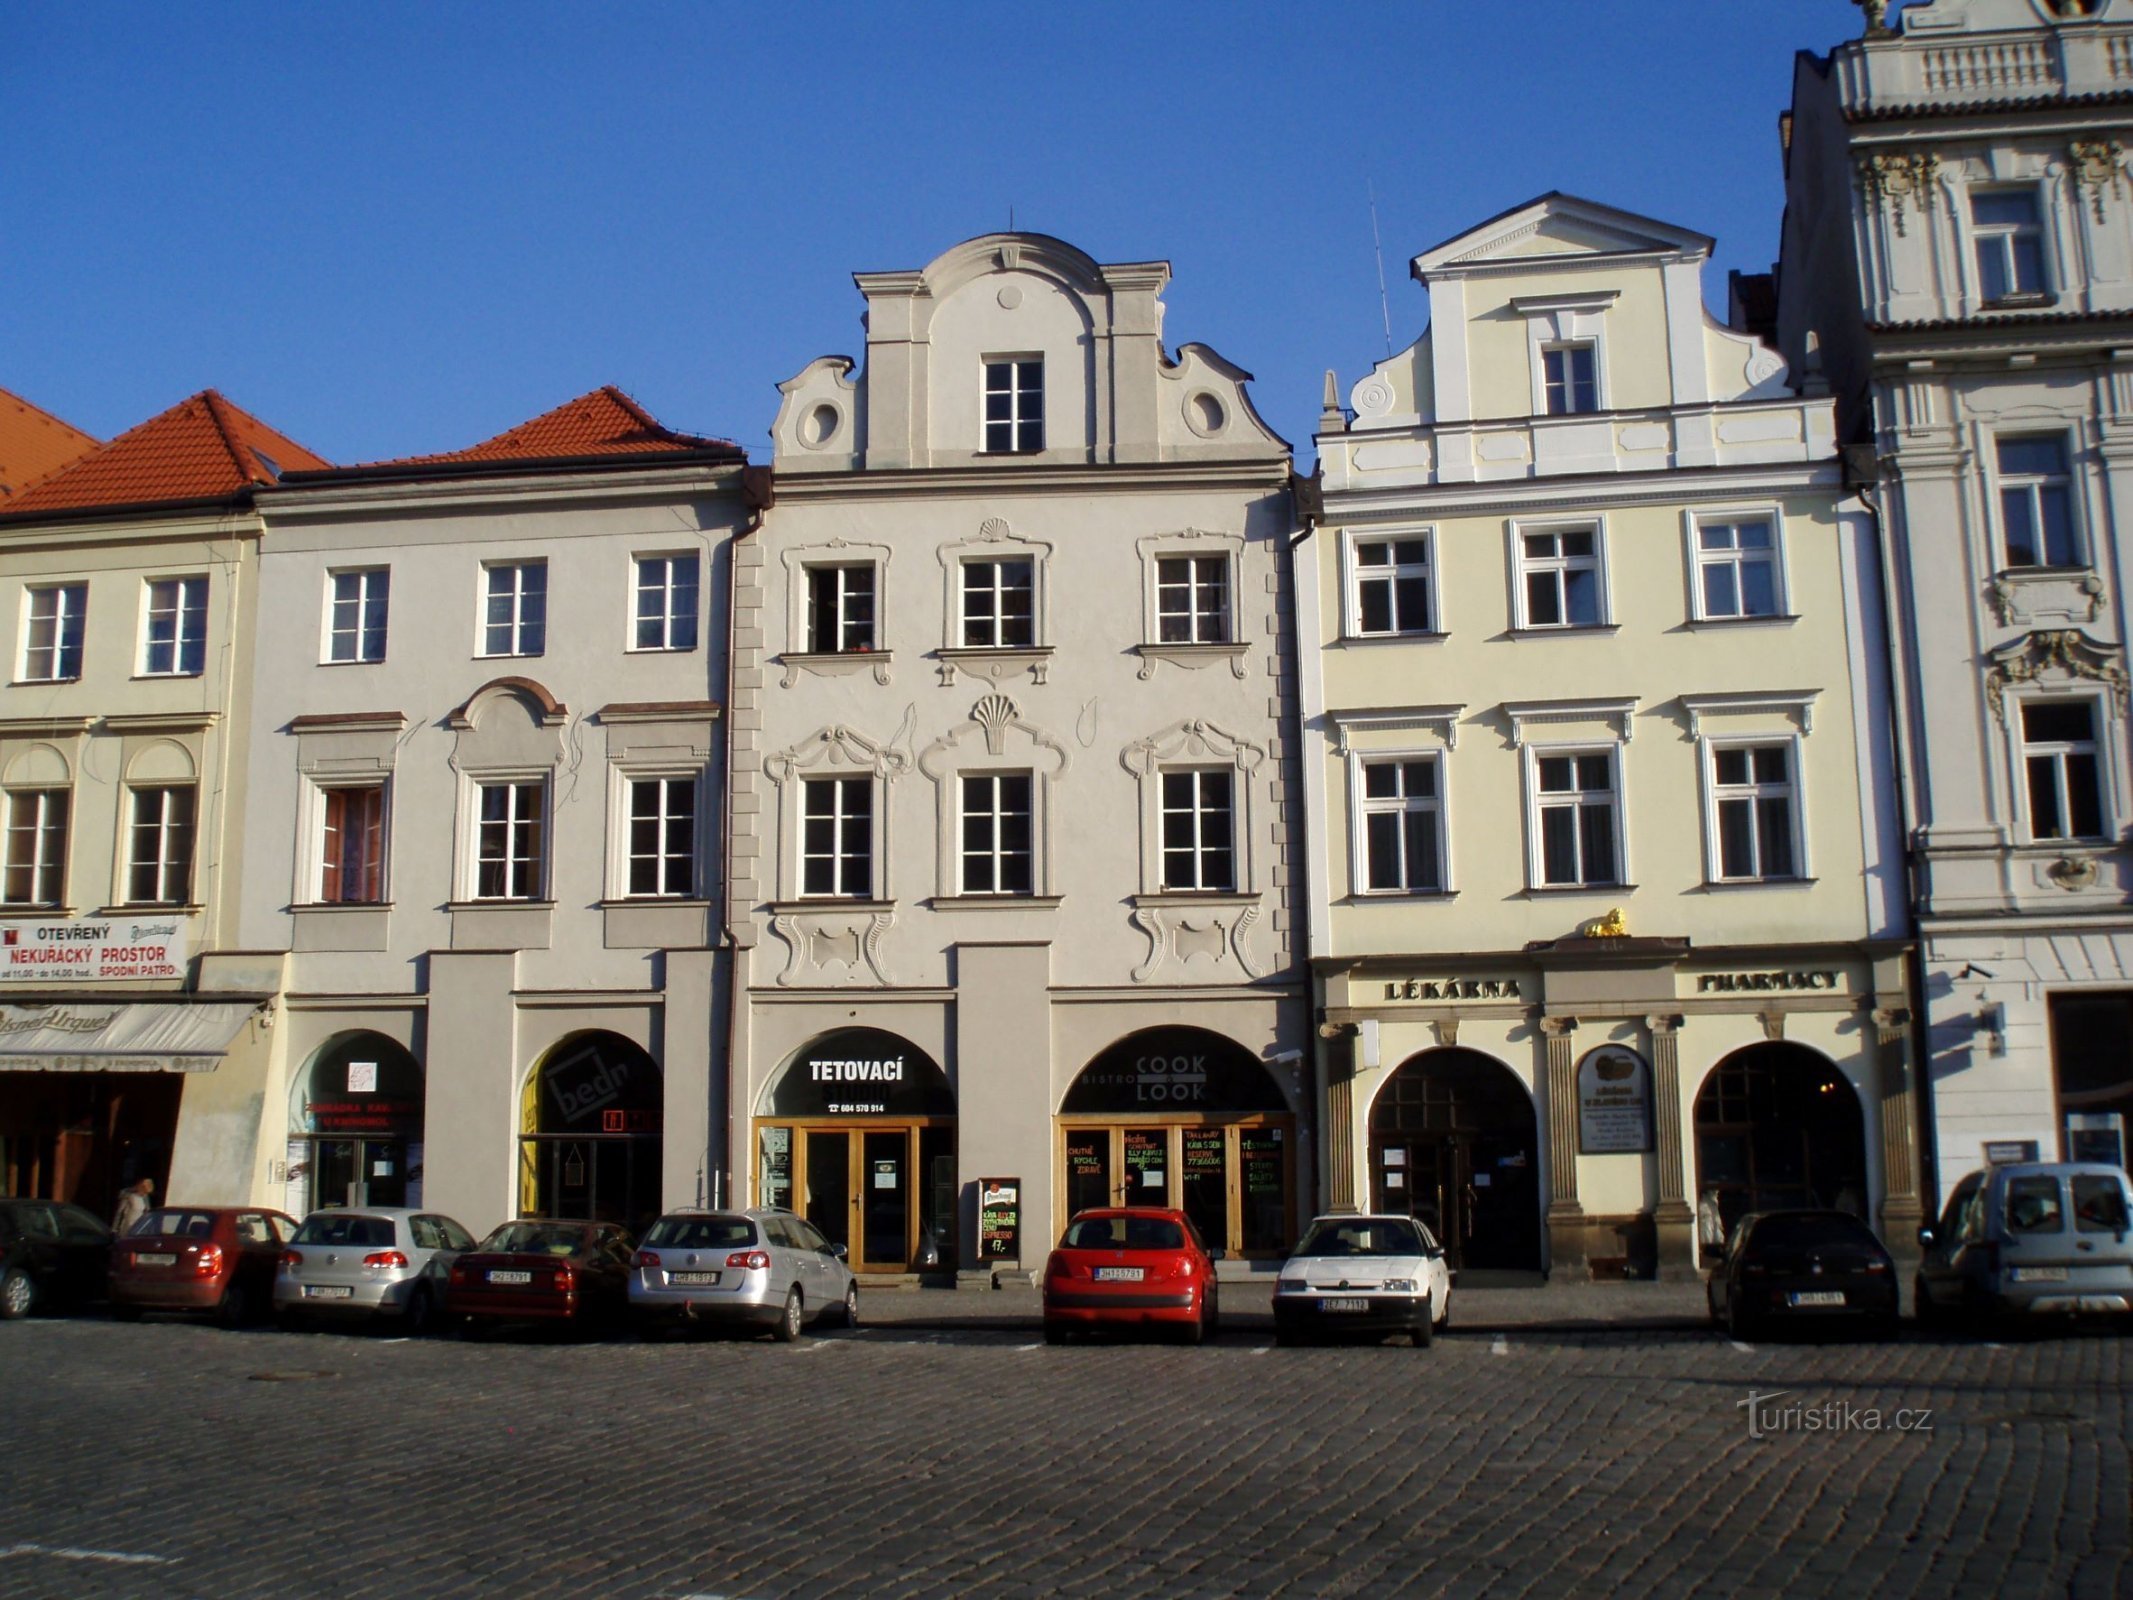 Velké náměstí nr. 27-29 (Hradec Králové, 9.4.2012-XNUMX-XNUMX)